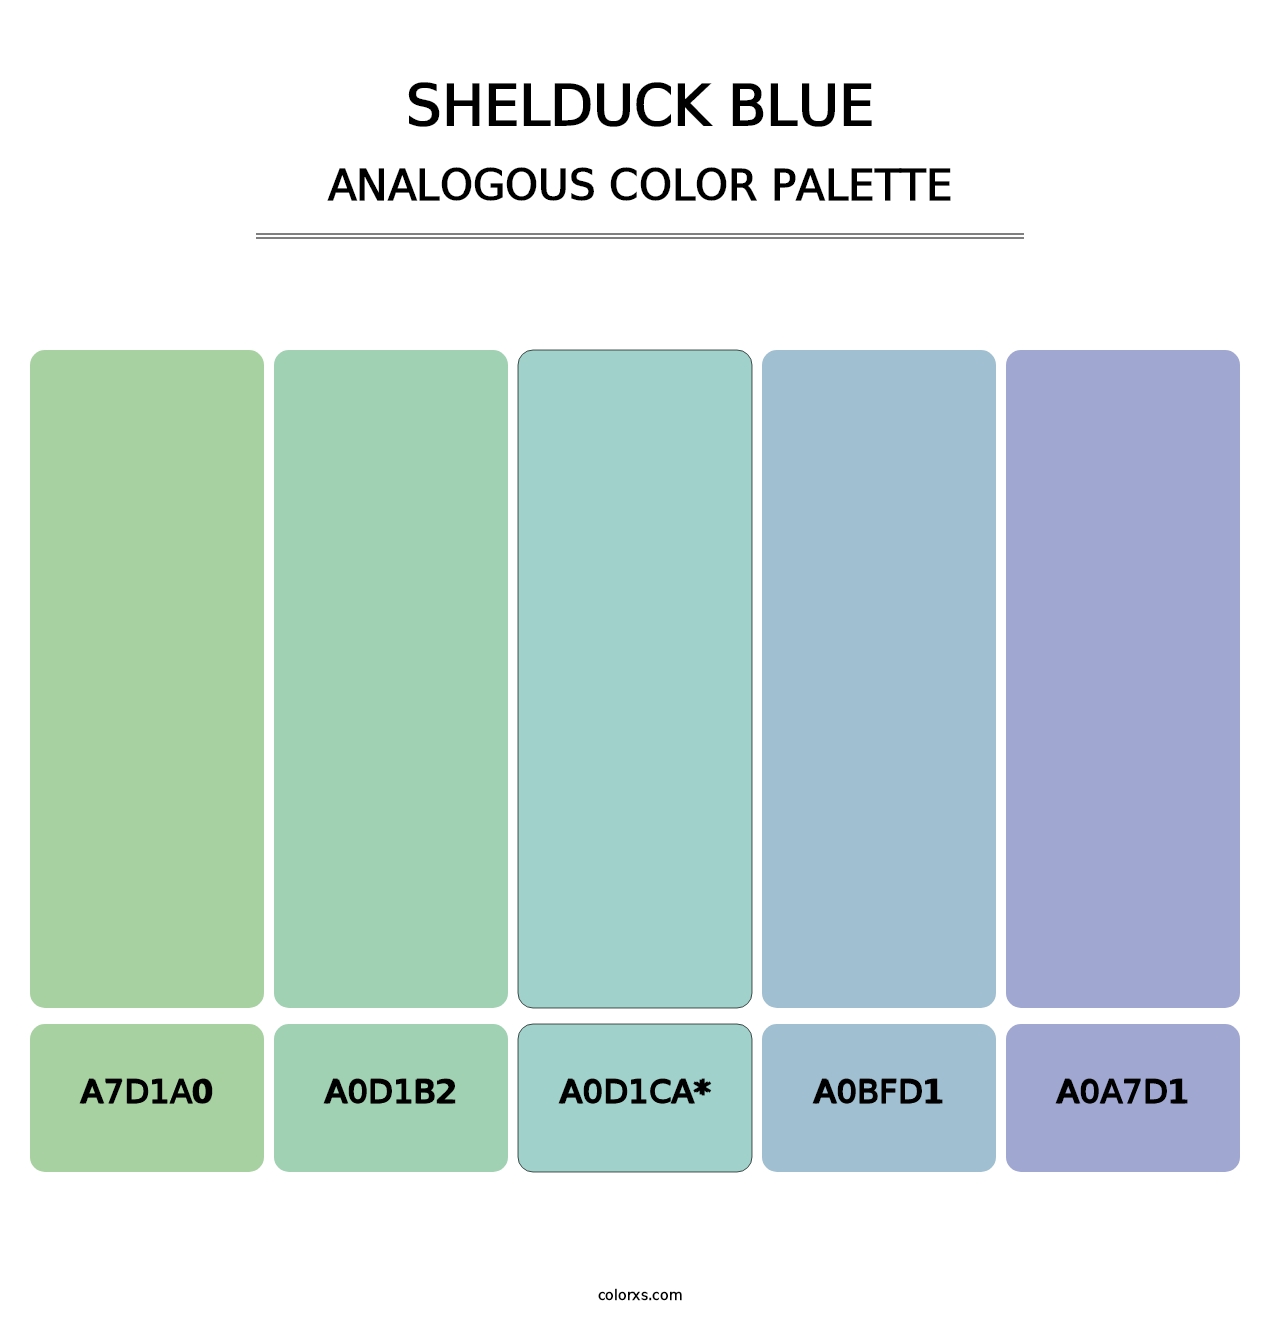 Shelduck Blue - Analogous Color Palette